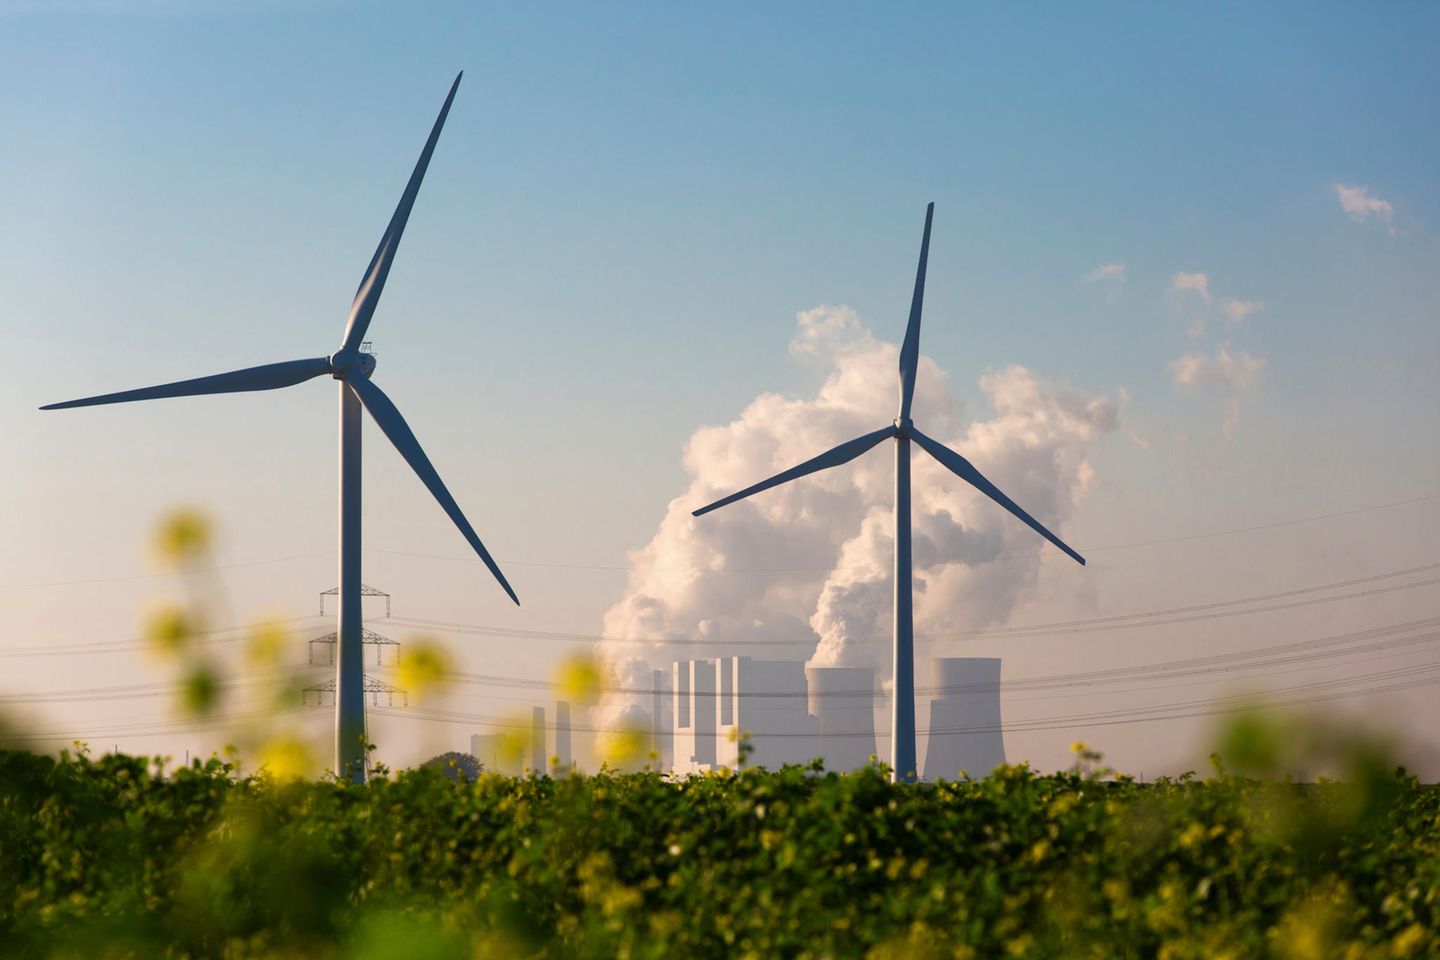 Immer mehr Windkraftanlagen produzieren Strom in Deutschland. Doch dem langen Weg der Energiewende liegen viele Hindernisse im Weg. Vom Ziel emissionsfreien Wirtschaftens ist das Land noch weit entfernt